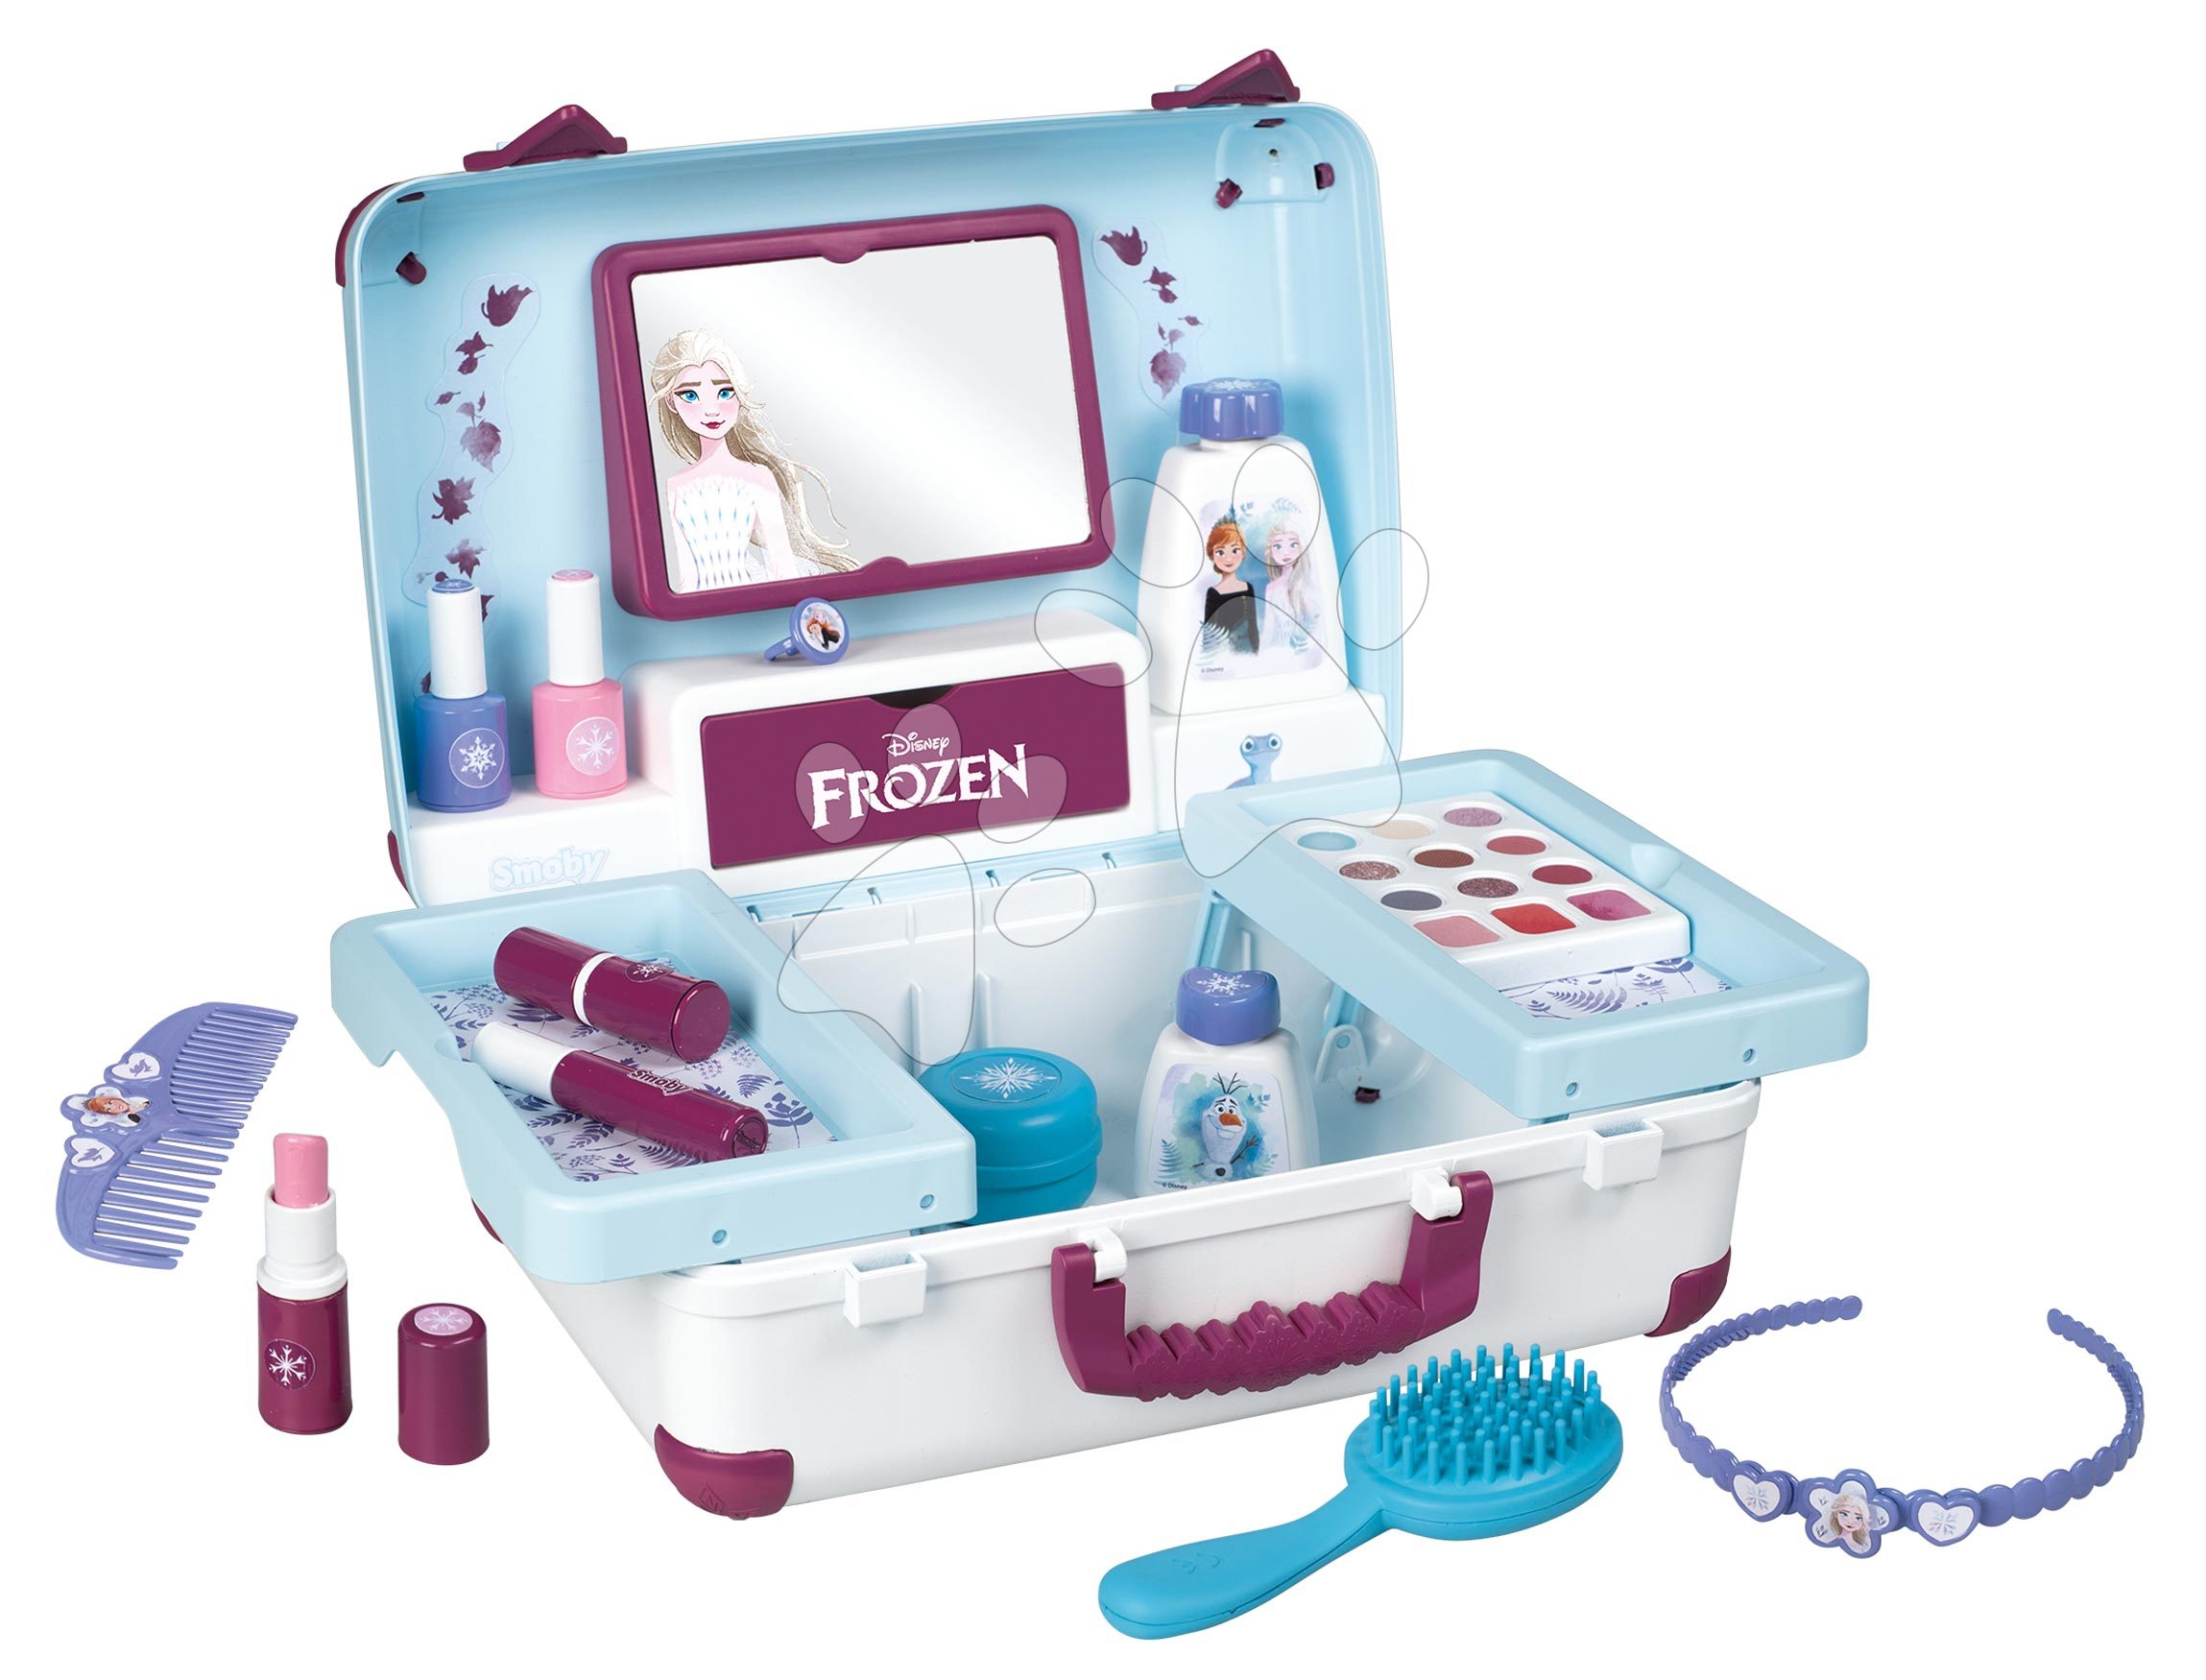 Kozmetický stolík pre deti - Kozmetický kufrík Frozen My Beauty Vanity Smoby pre kaderníčku nechtové štúdio a make up kozmetičku s 13 doplnkami